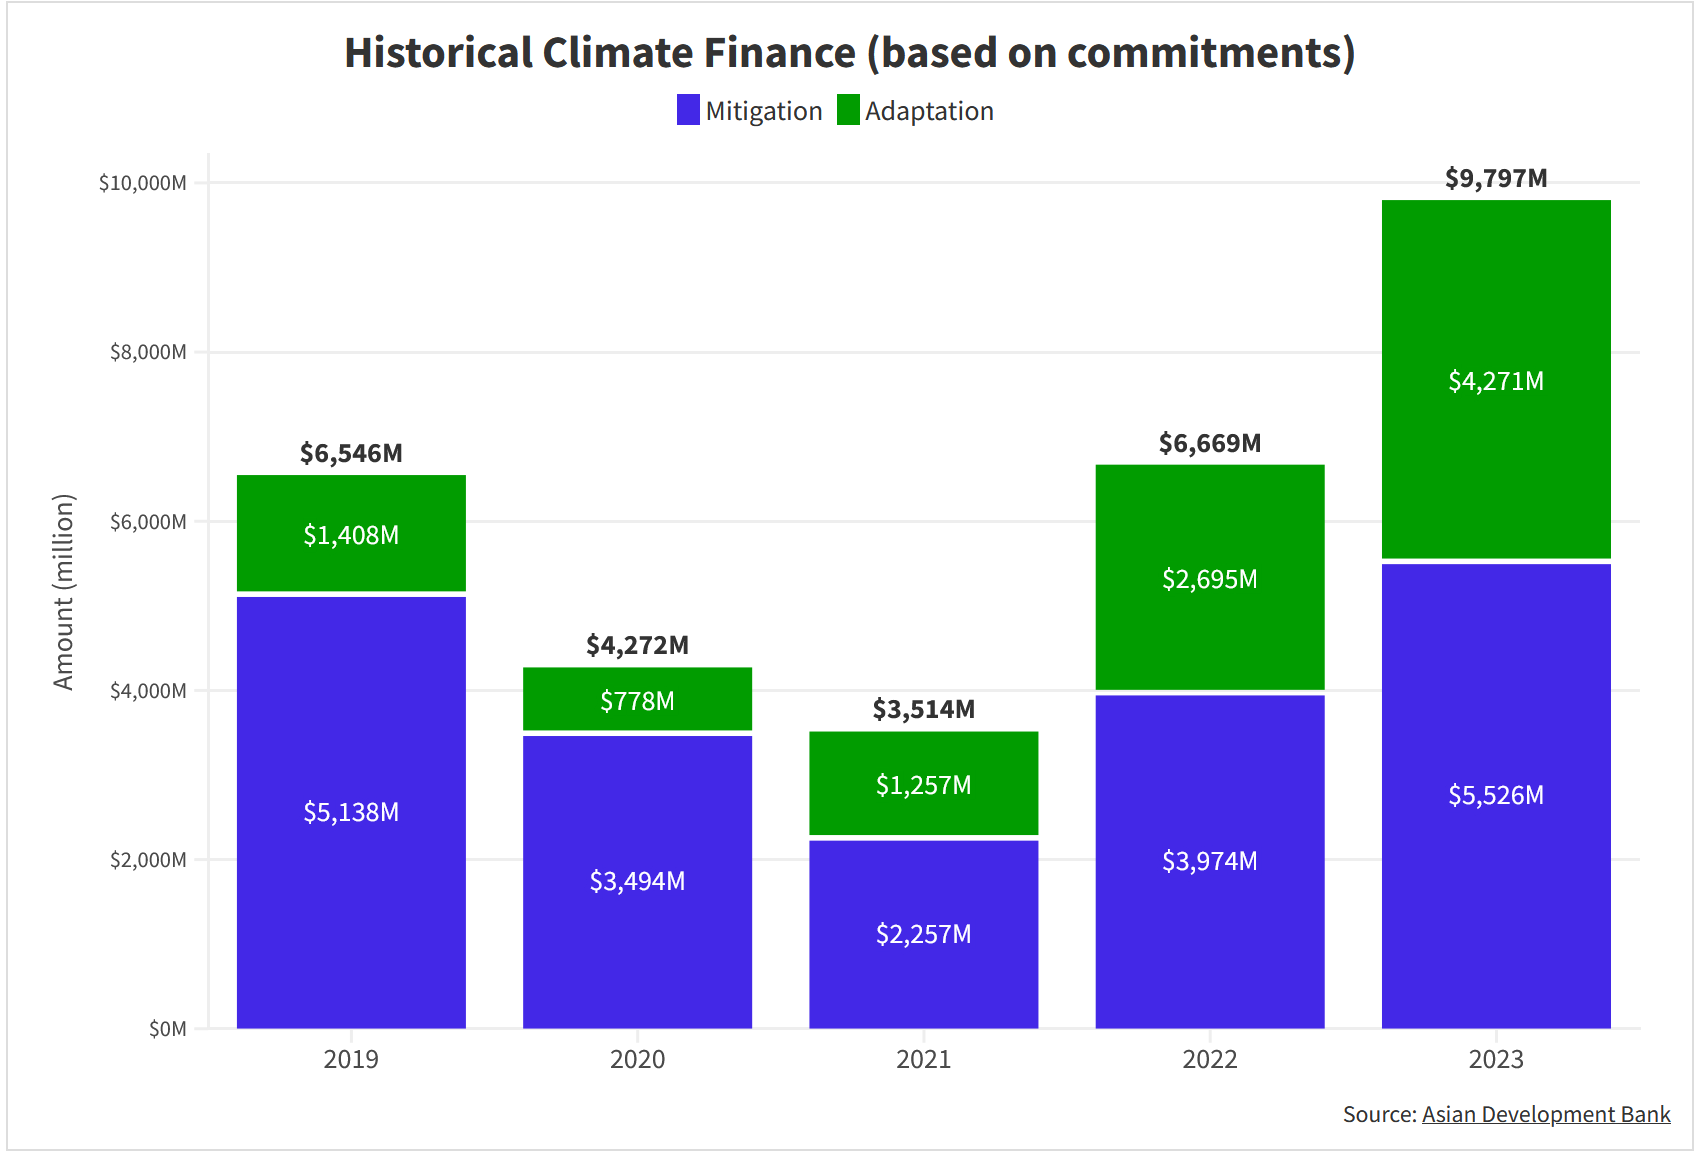 Cam kết tài trợ khí hậu của ADB qua các năm